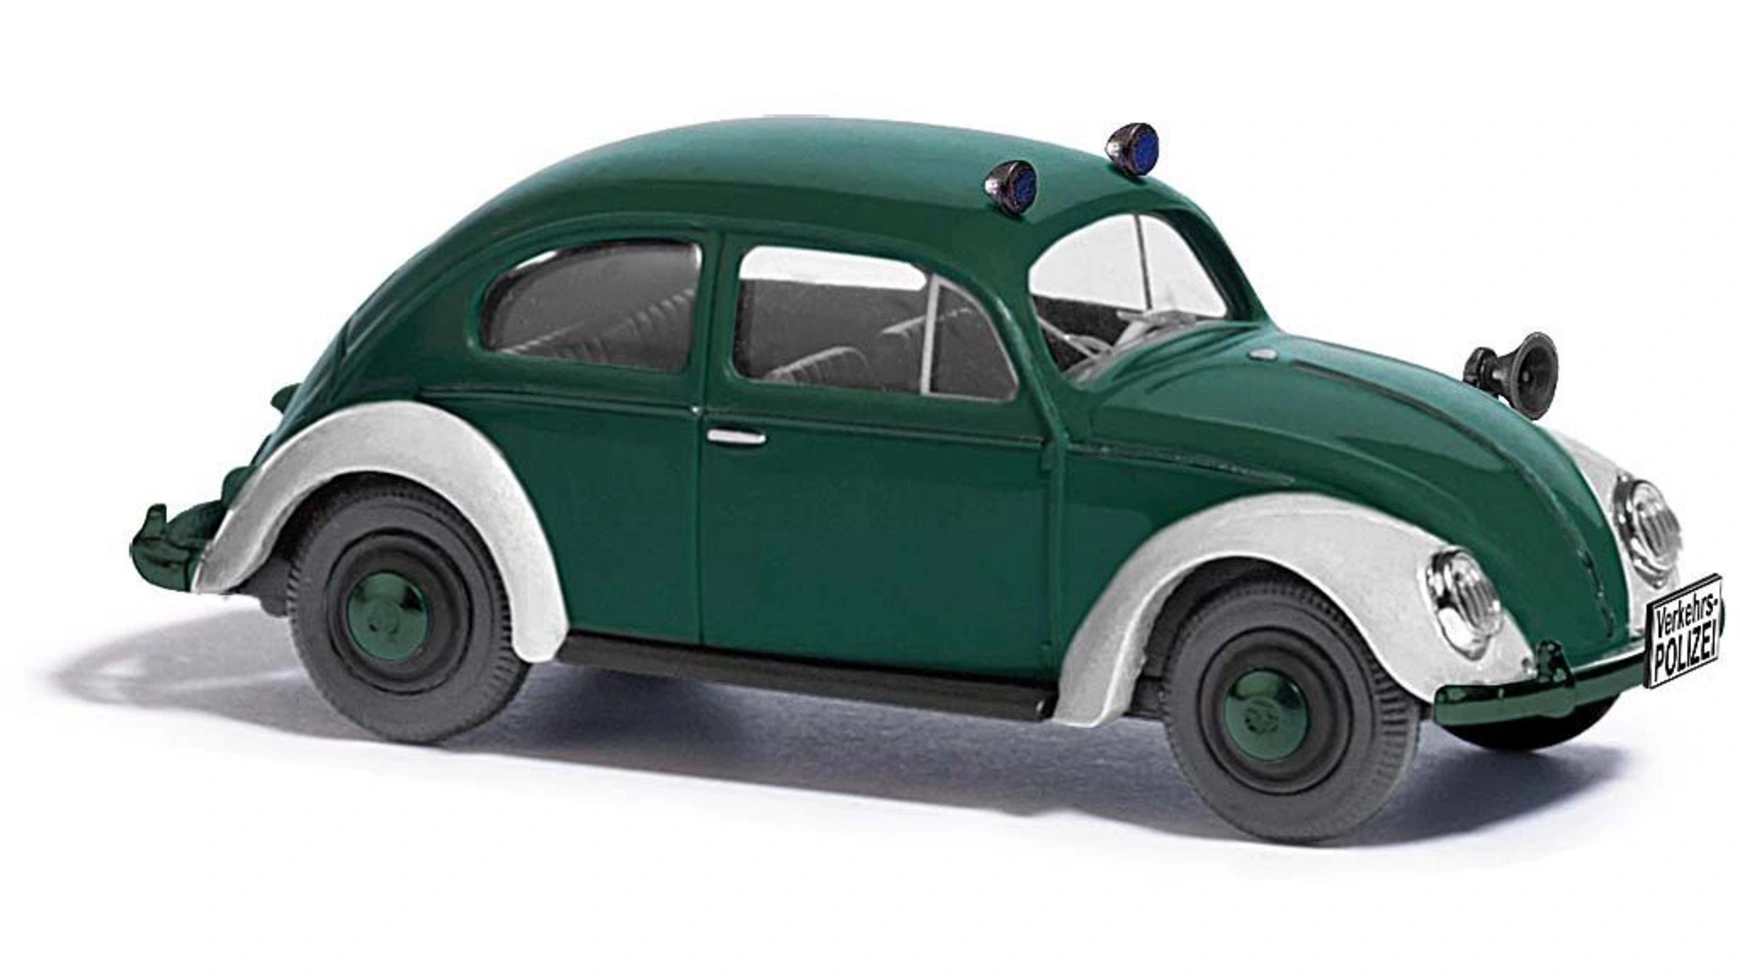 Busch Modellspielwaren 1:87 VW Beetle с овальным окном, полицейский, 1955 года выпуска. bandai чудесный vw e beetle